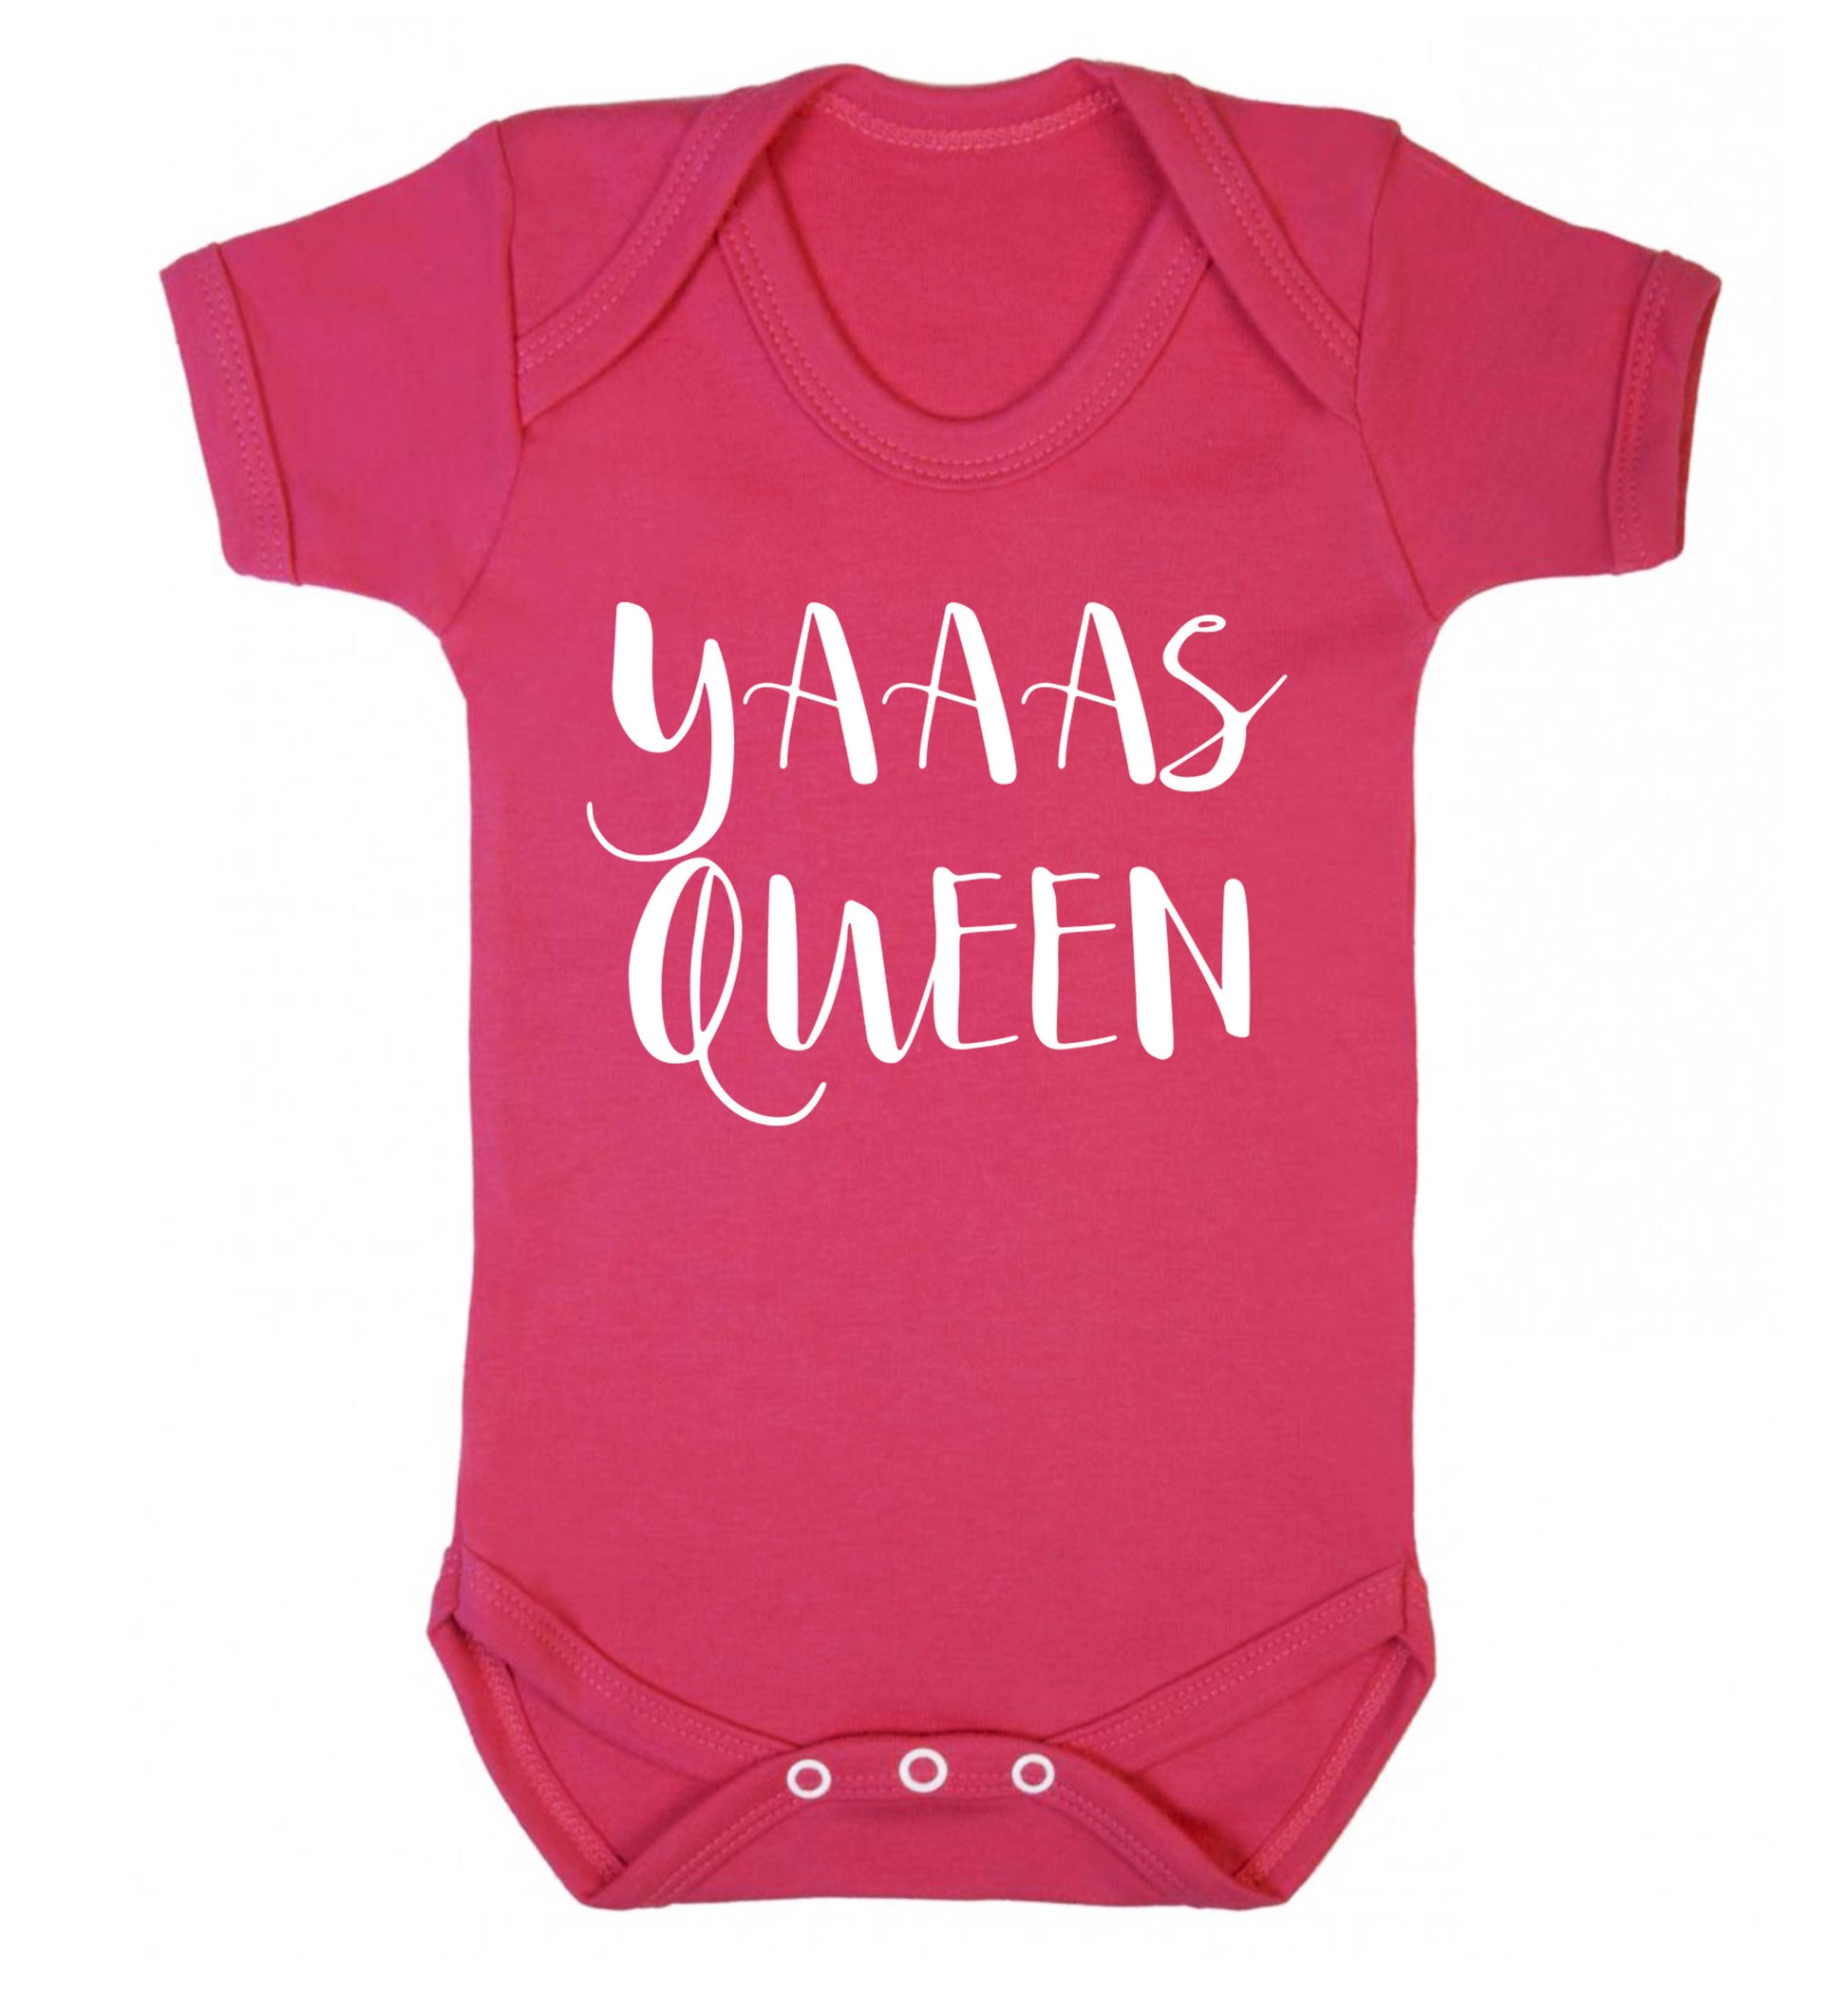 Yas Queen Baby Vest dark pink 18-24 months